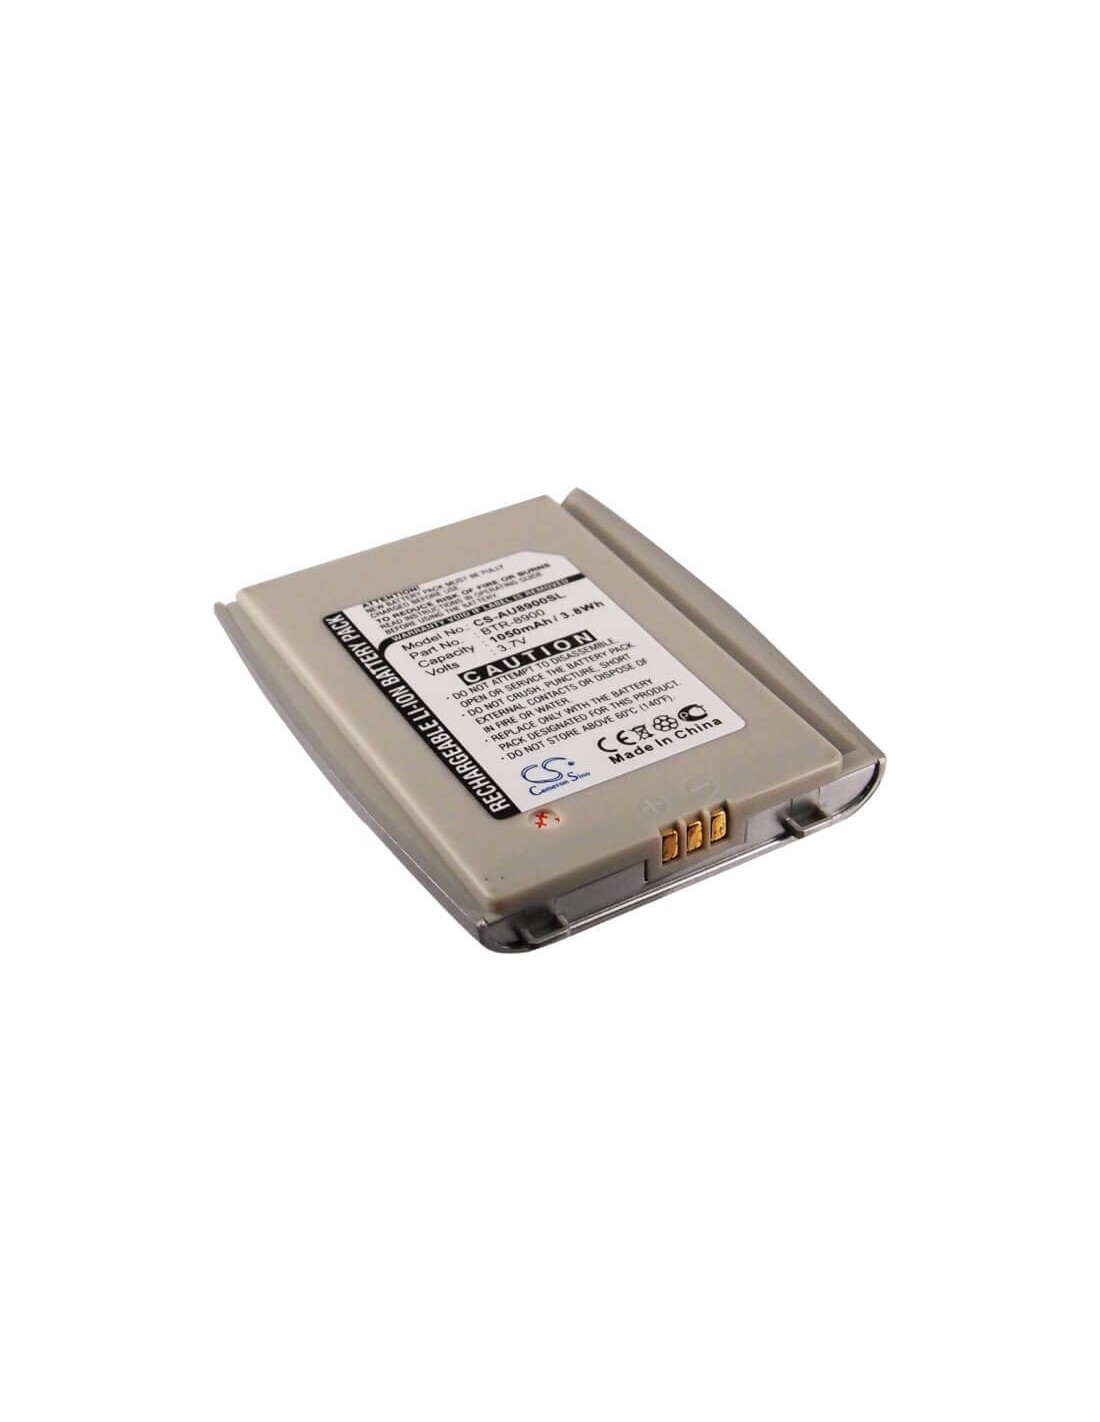 Battery for Audiovox CDM-8900, CDM-8920, CDM-8930 3.7V, 1050mAh - 3.89Wh